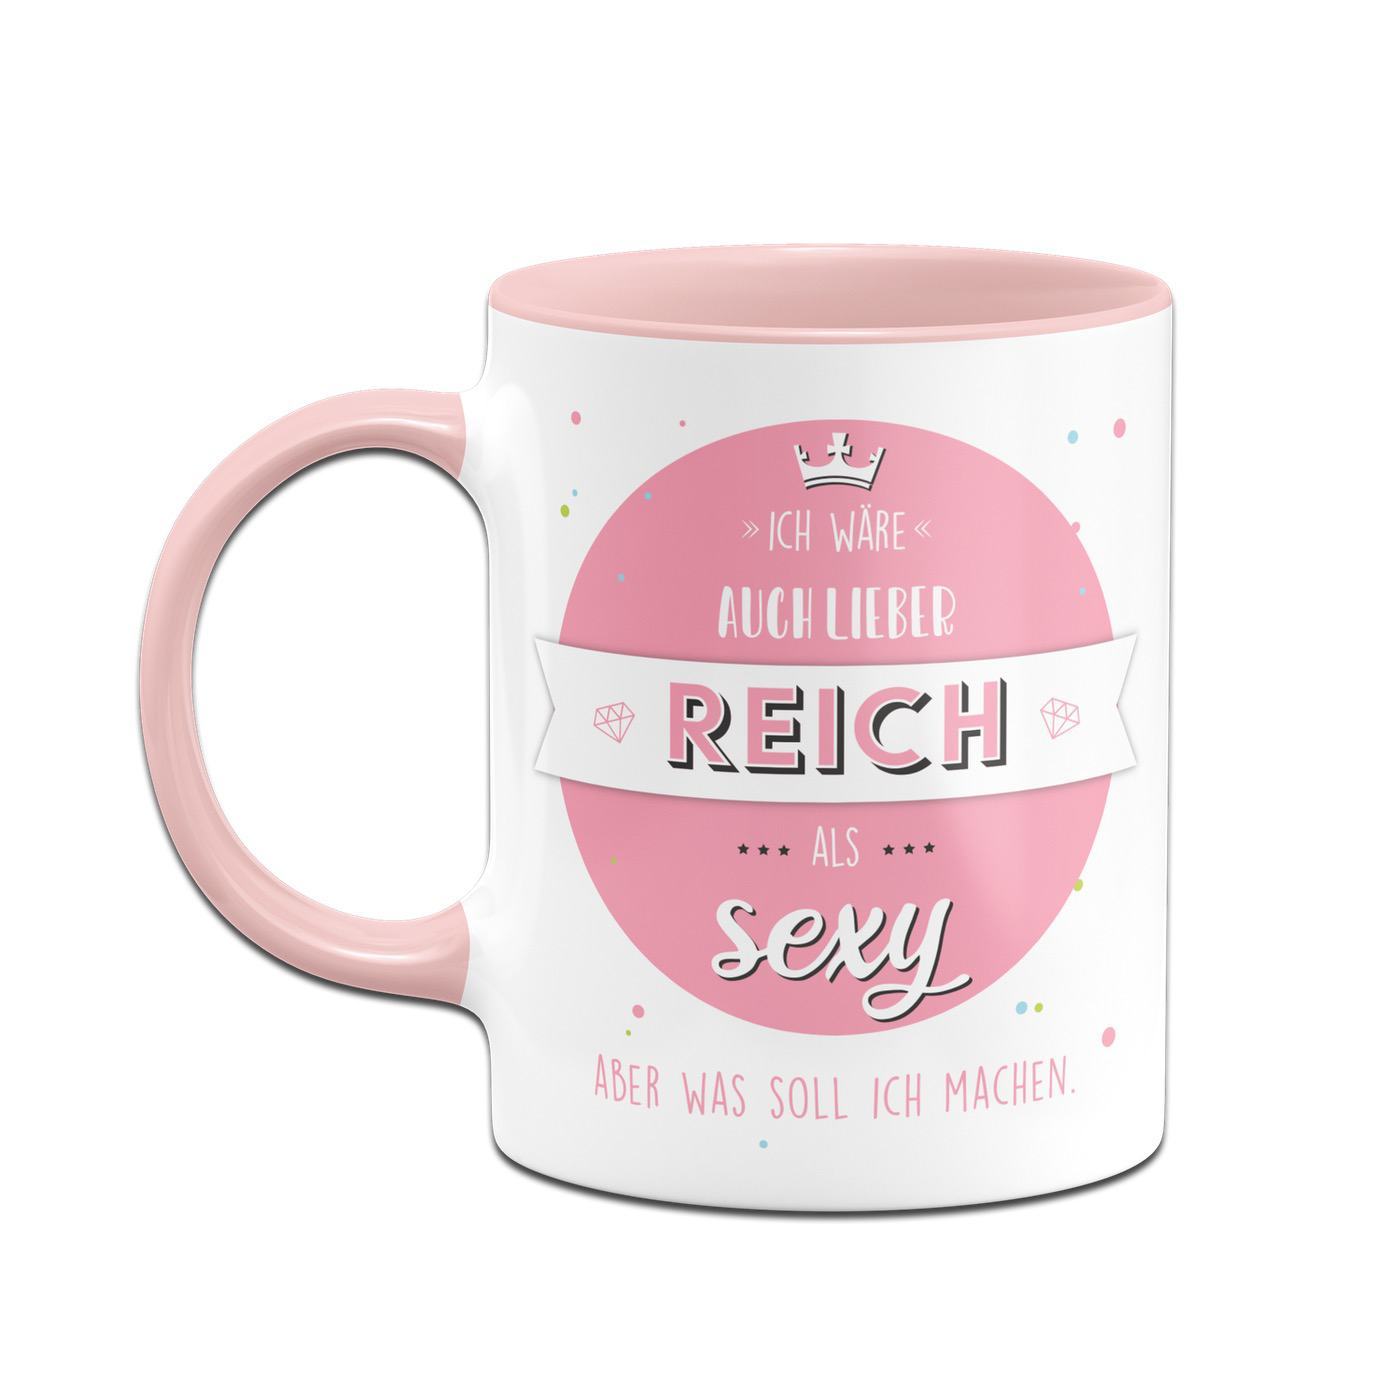 Bild: Tasse - Ich wäre auch lieber reich als sexy aber was soll ich machen Geschenkidee